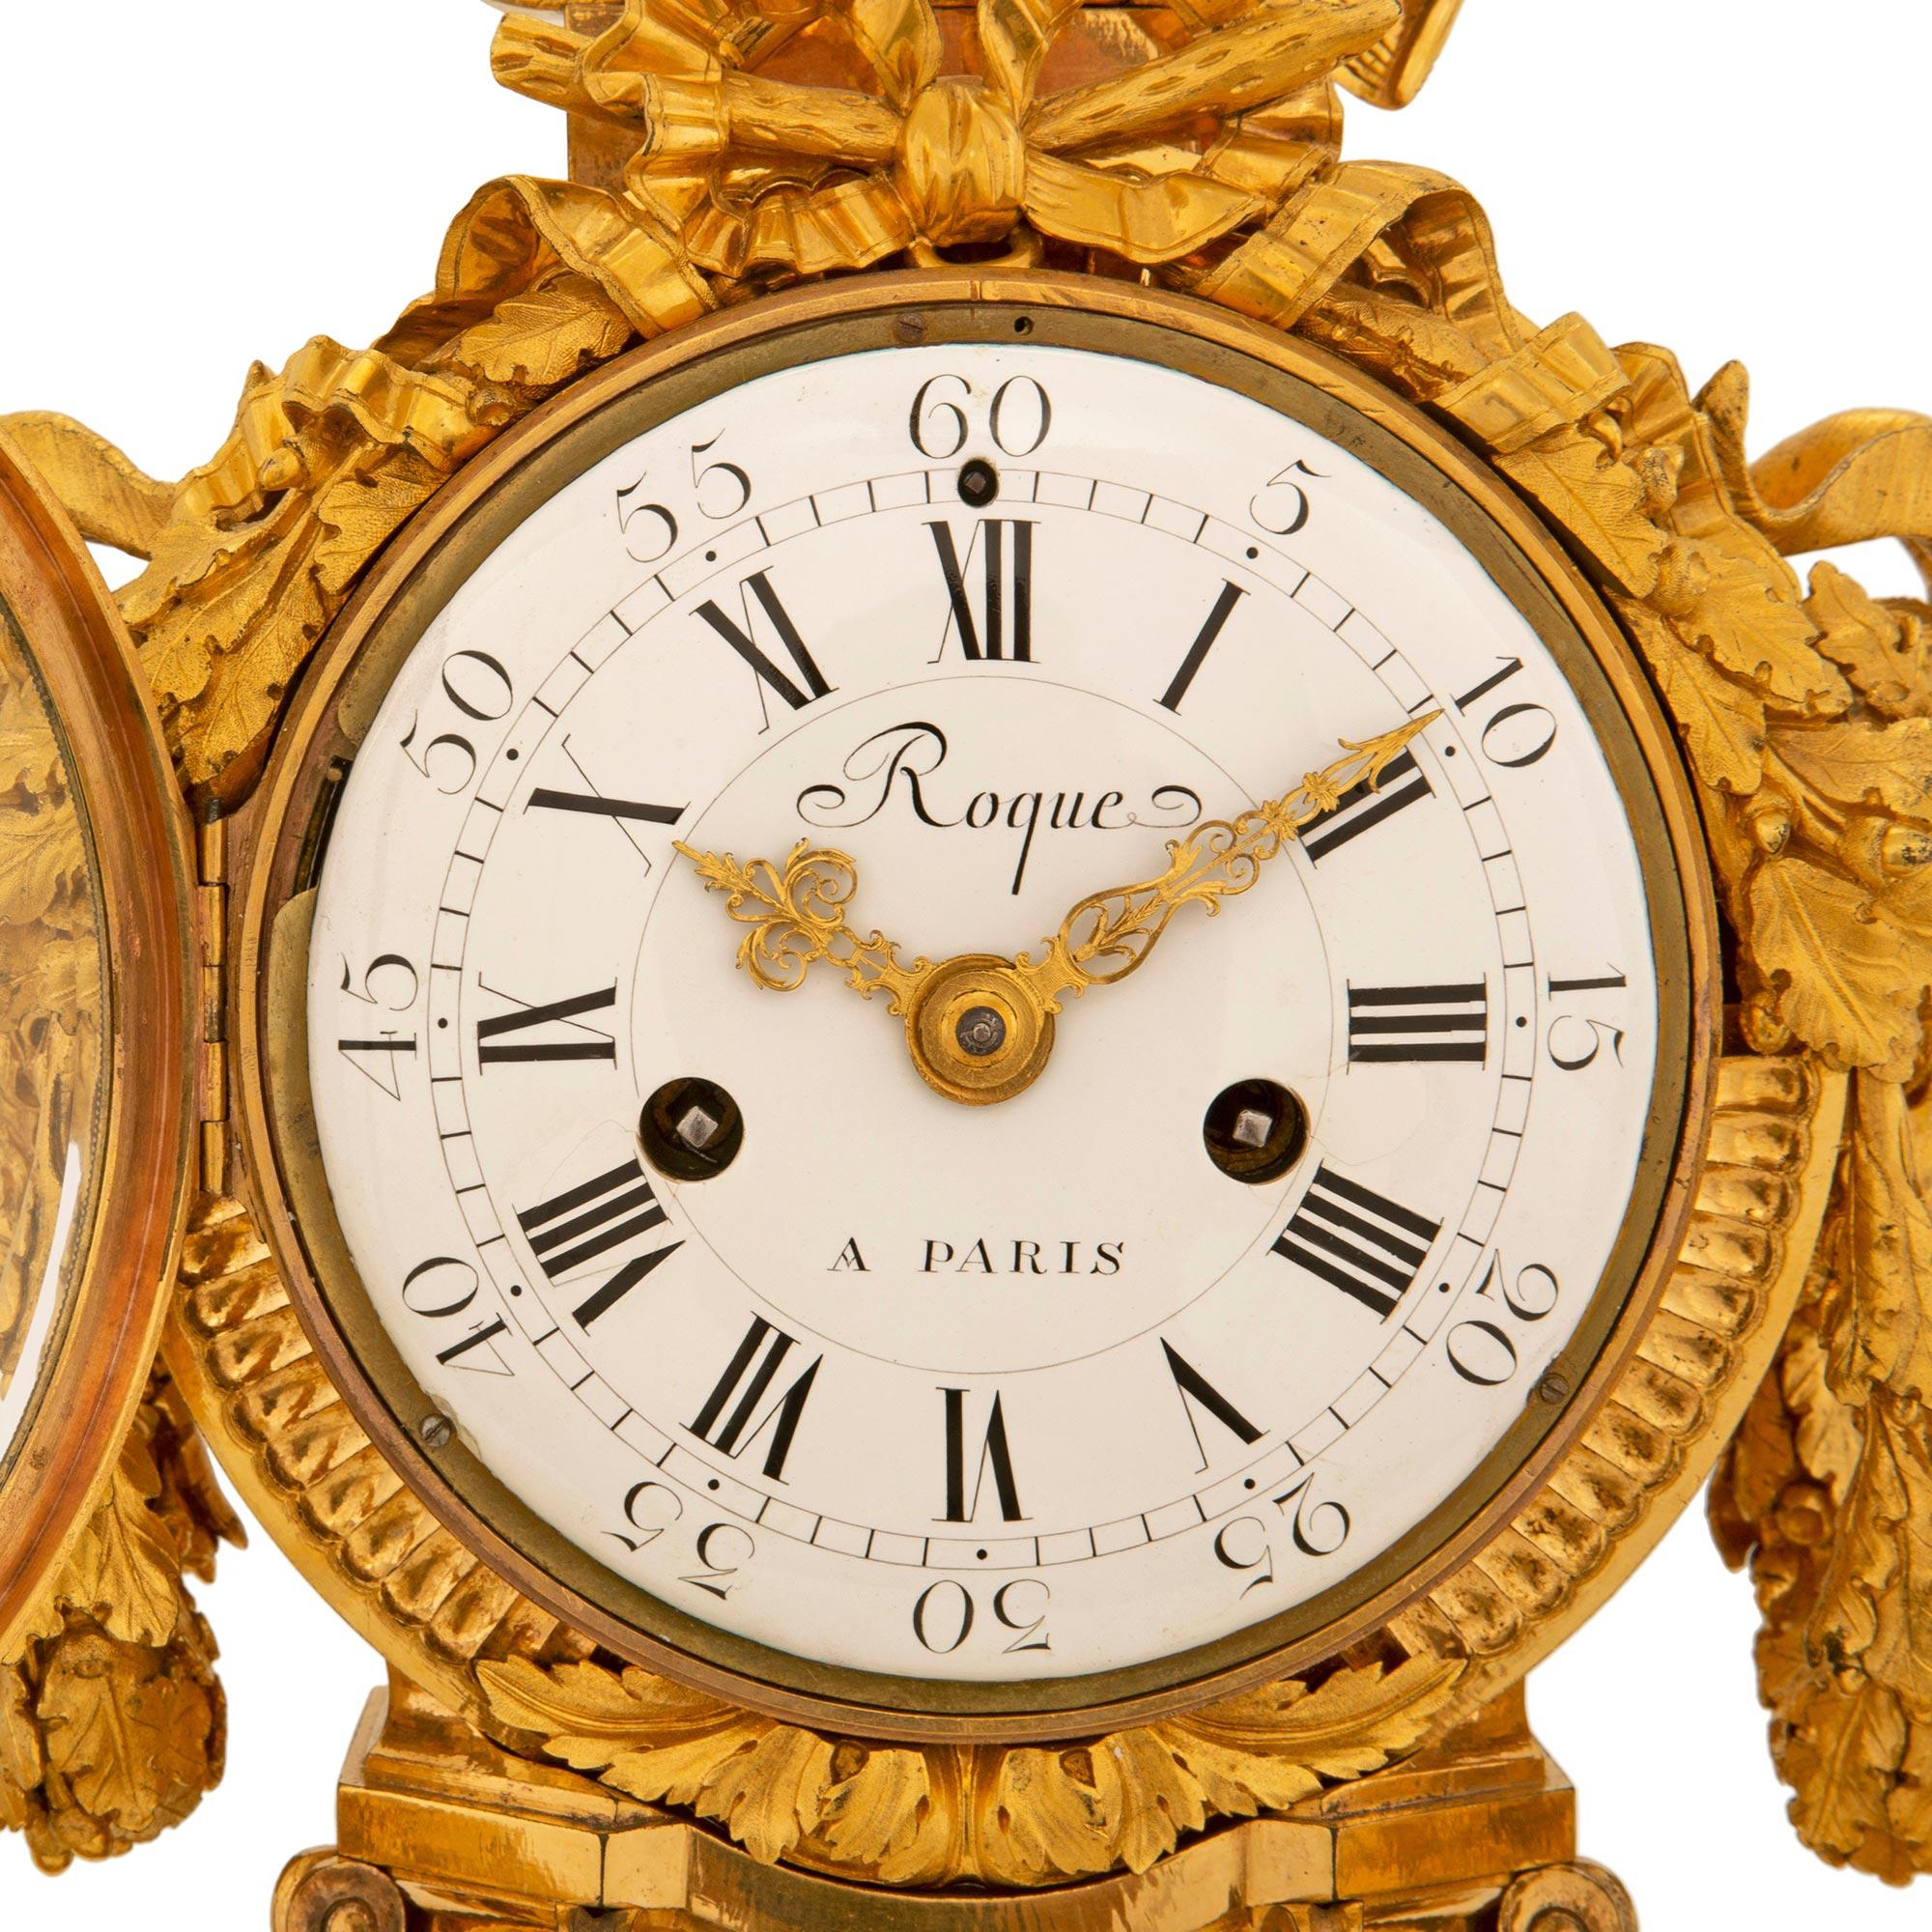 Une étonnante et très impressionnante horloge en bronze doré de style Louis XVI du 19ème siècle par Roque, Paris. L'horloge est surélevée par d'élégants pieds circulaires mouchetés avec de fines bandes feuillagées enveloppantes. Au-dessus de chaque